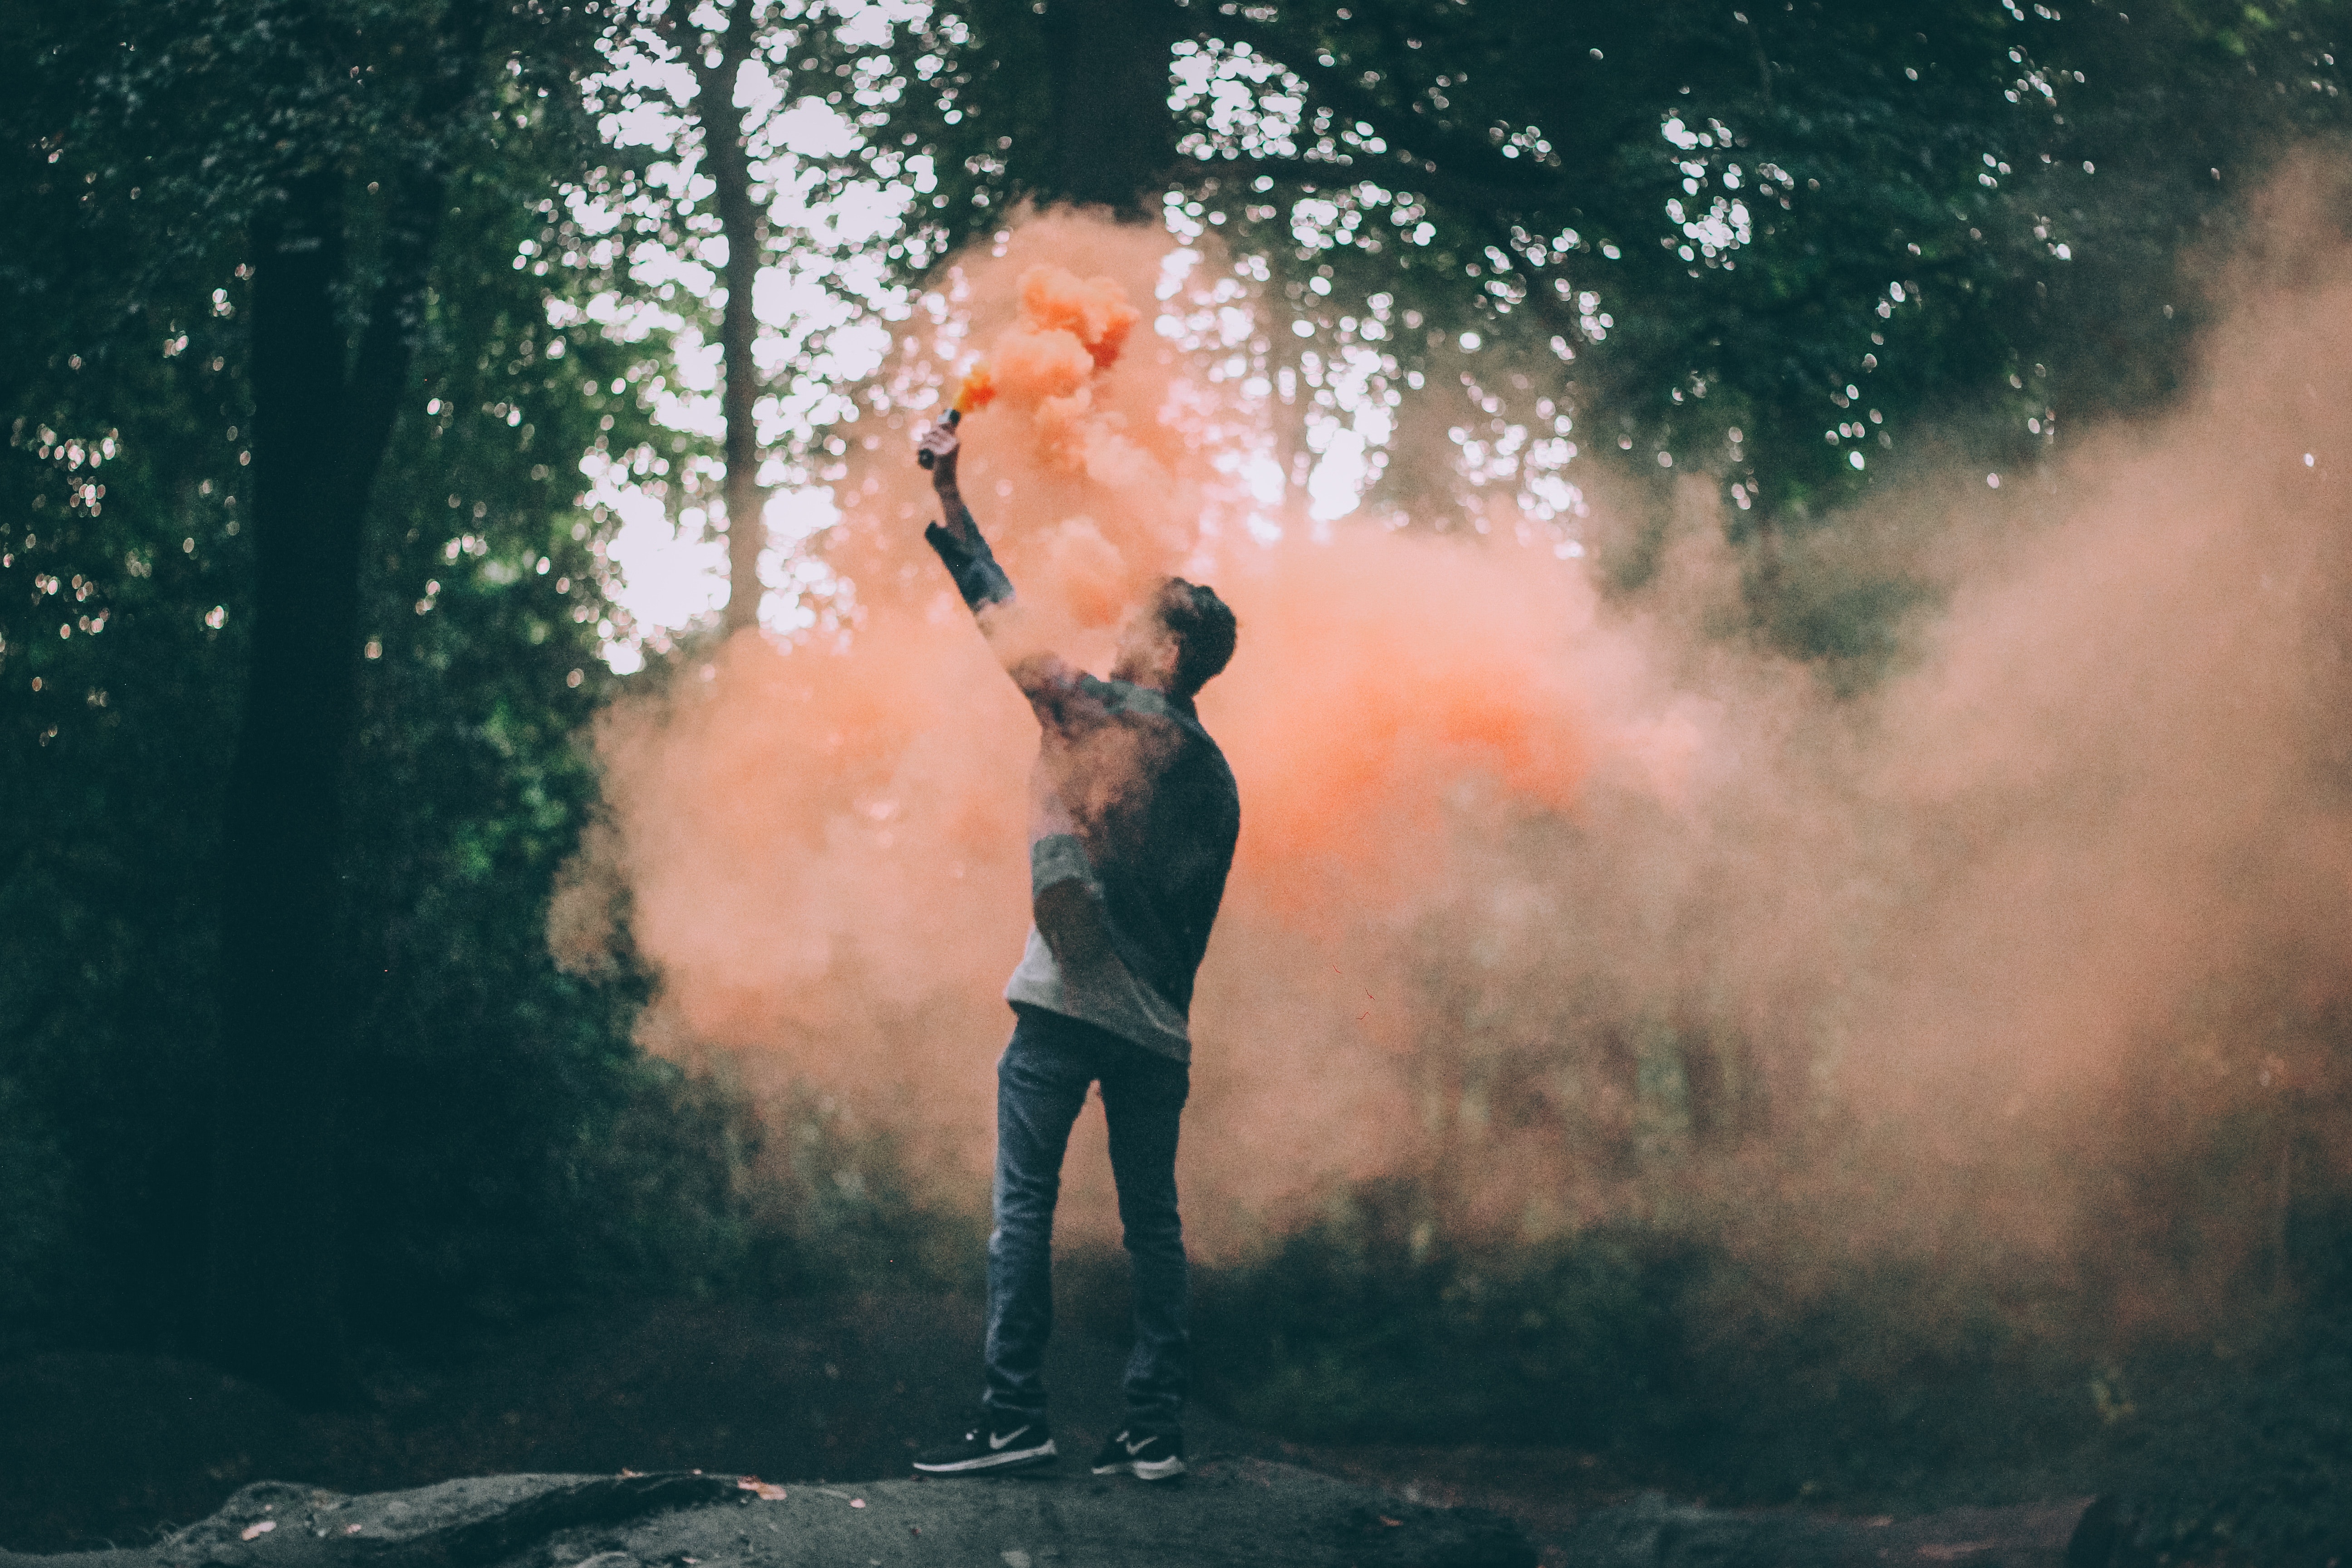 Man throwing peach-colored powder photo